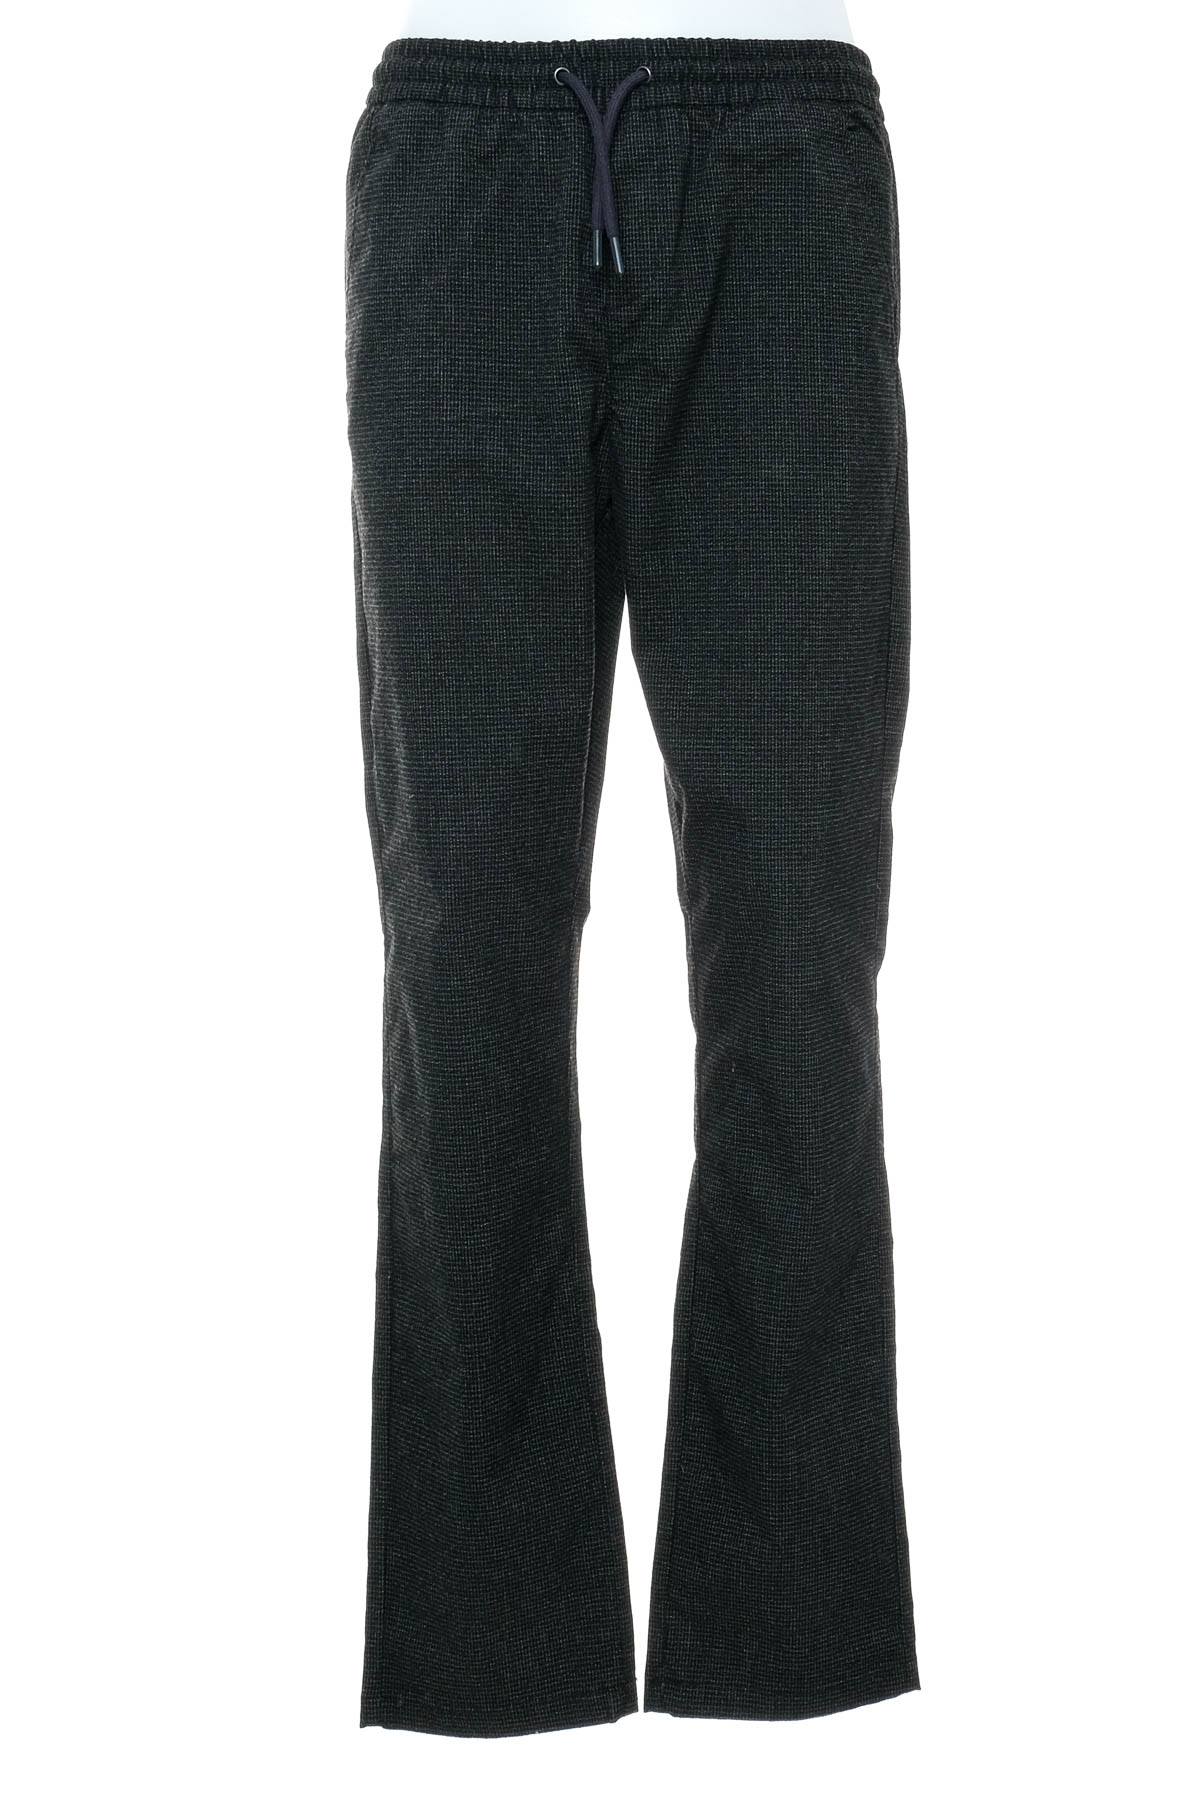 Pantalon pentru băiat - TOM TAILOR - 0